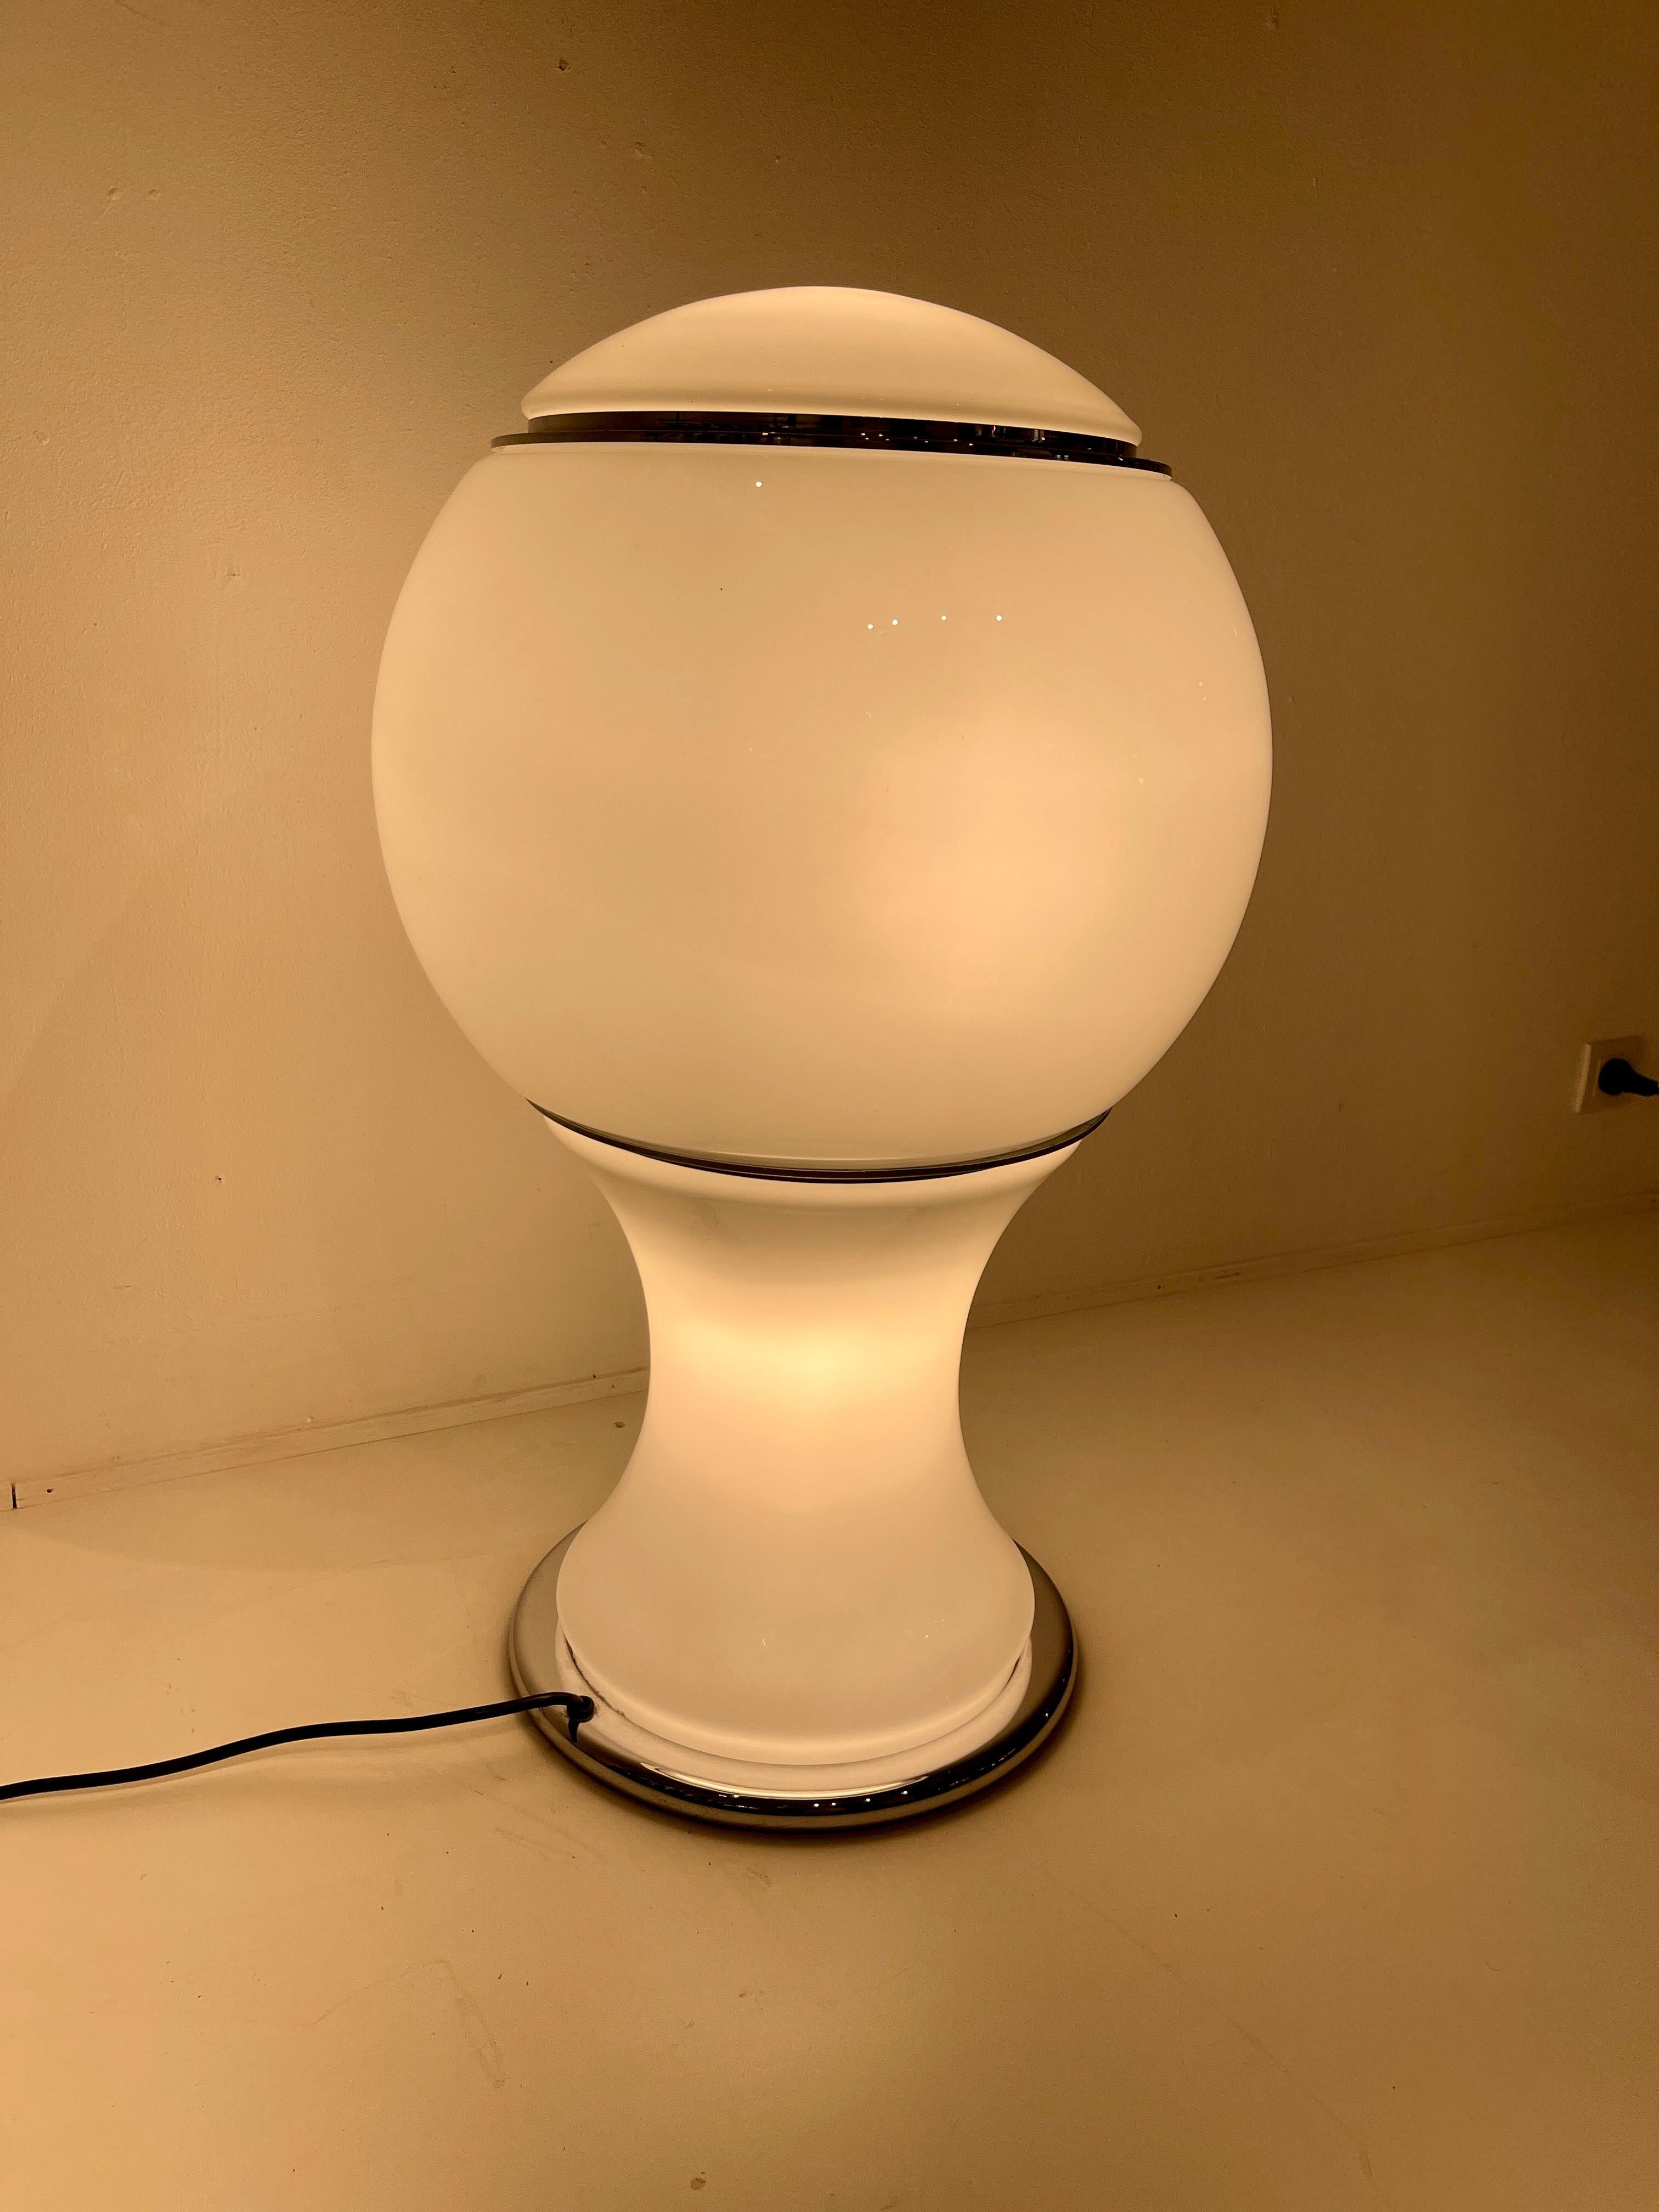 GIANNI CELADA FOR FONTANA ARTE.
Table lamp model 